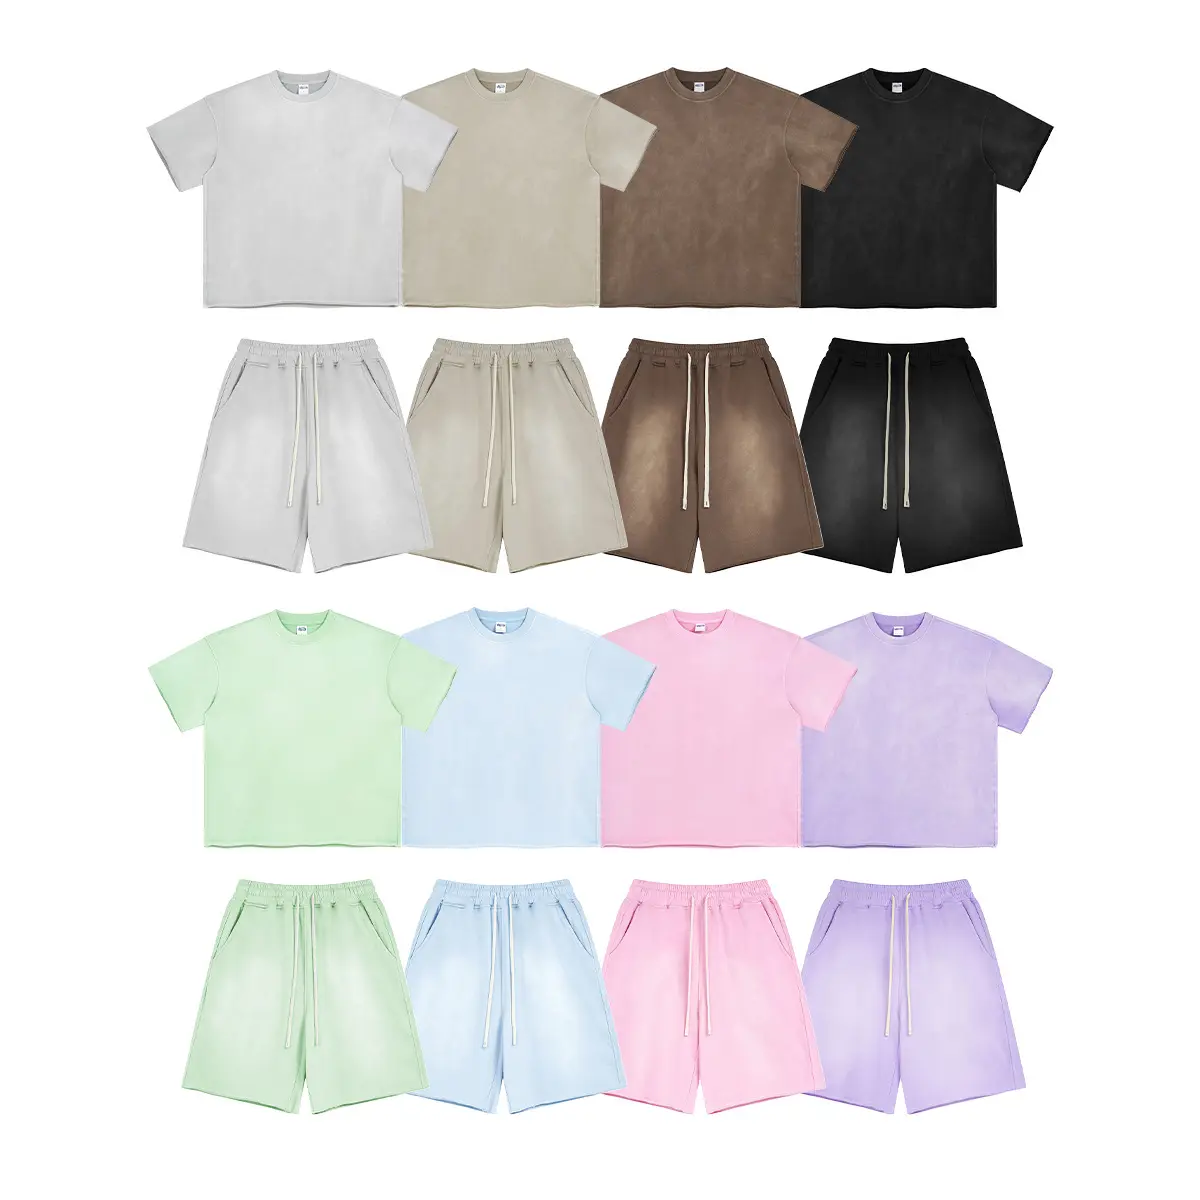 Conjunto de shorts de algodão pesado 360g para homens, conjunto de camisetas unissex de 2 peças para homens, conjunto curto de algodão lavado grande